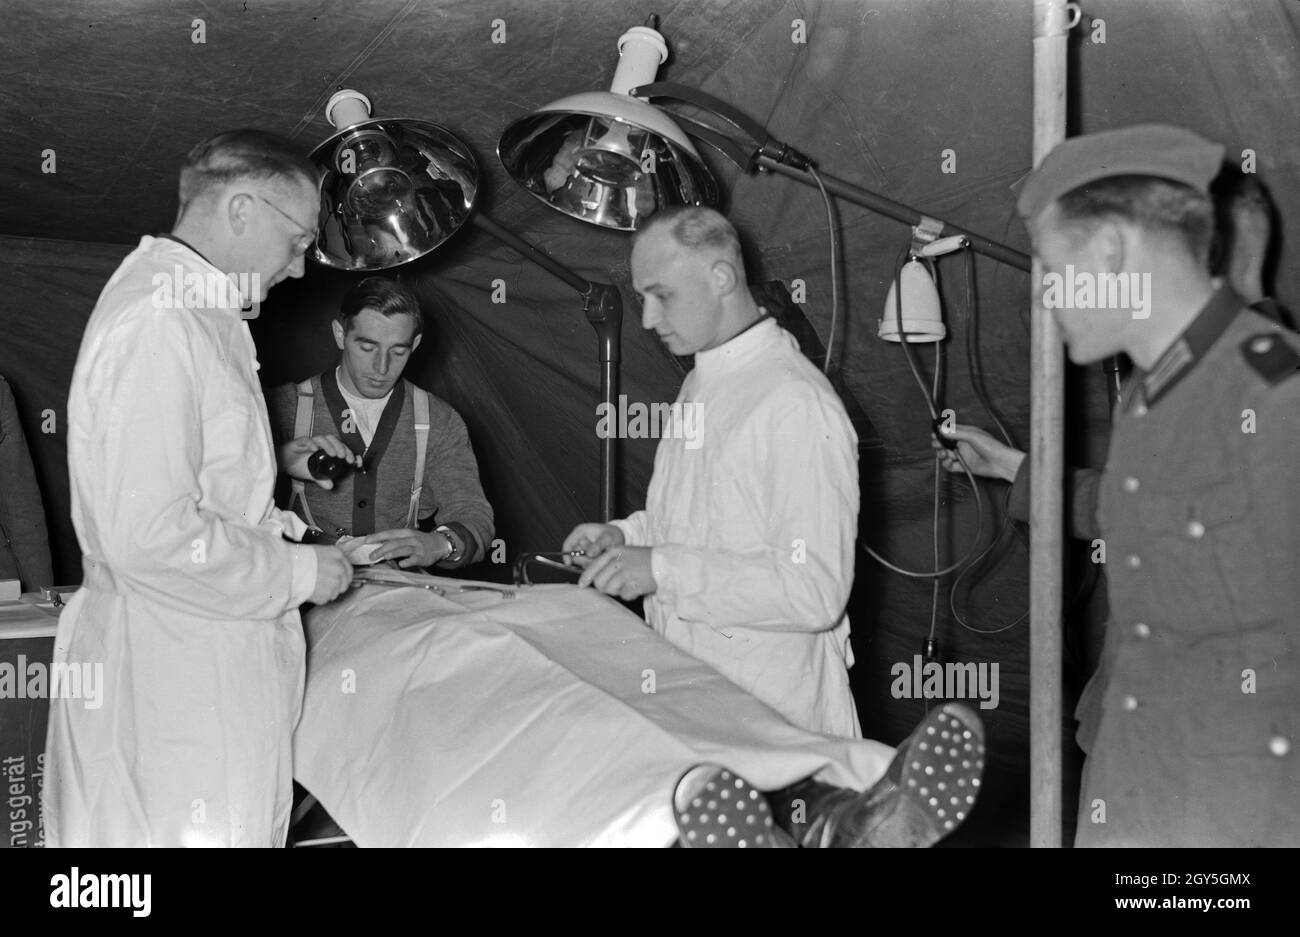 Ein Zug von Sanitätssoldaten mit ihrem mobil nutzbaren Operationssaal, Deutschland 1930er Jahre. A unit of medical corps soldiers with their mobile emergency room, Germany 1930s. Stock Photo